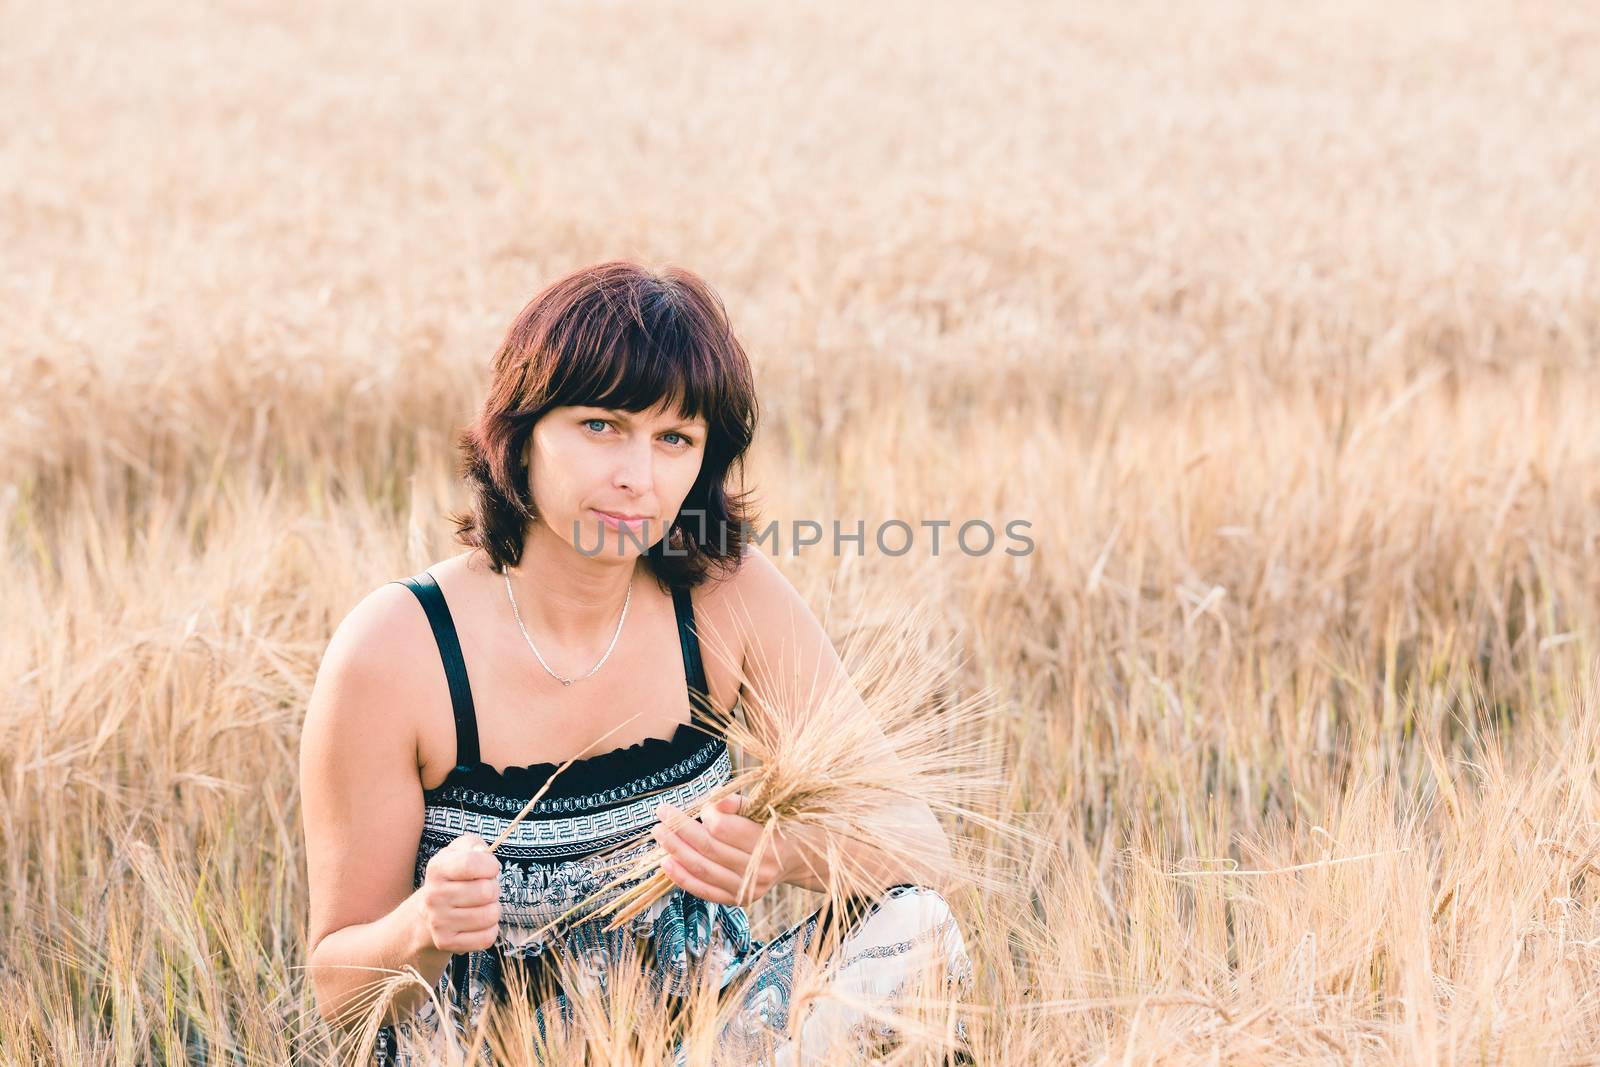 beauty woman in barley field by artush